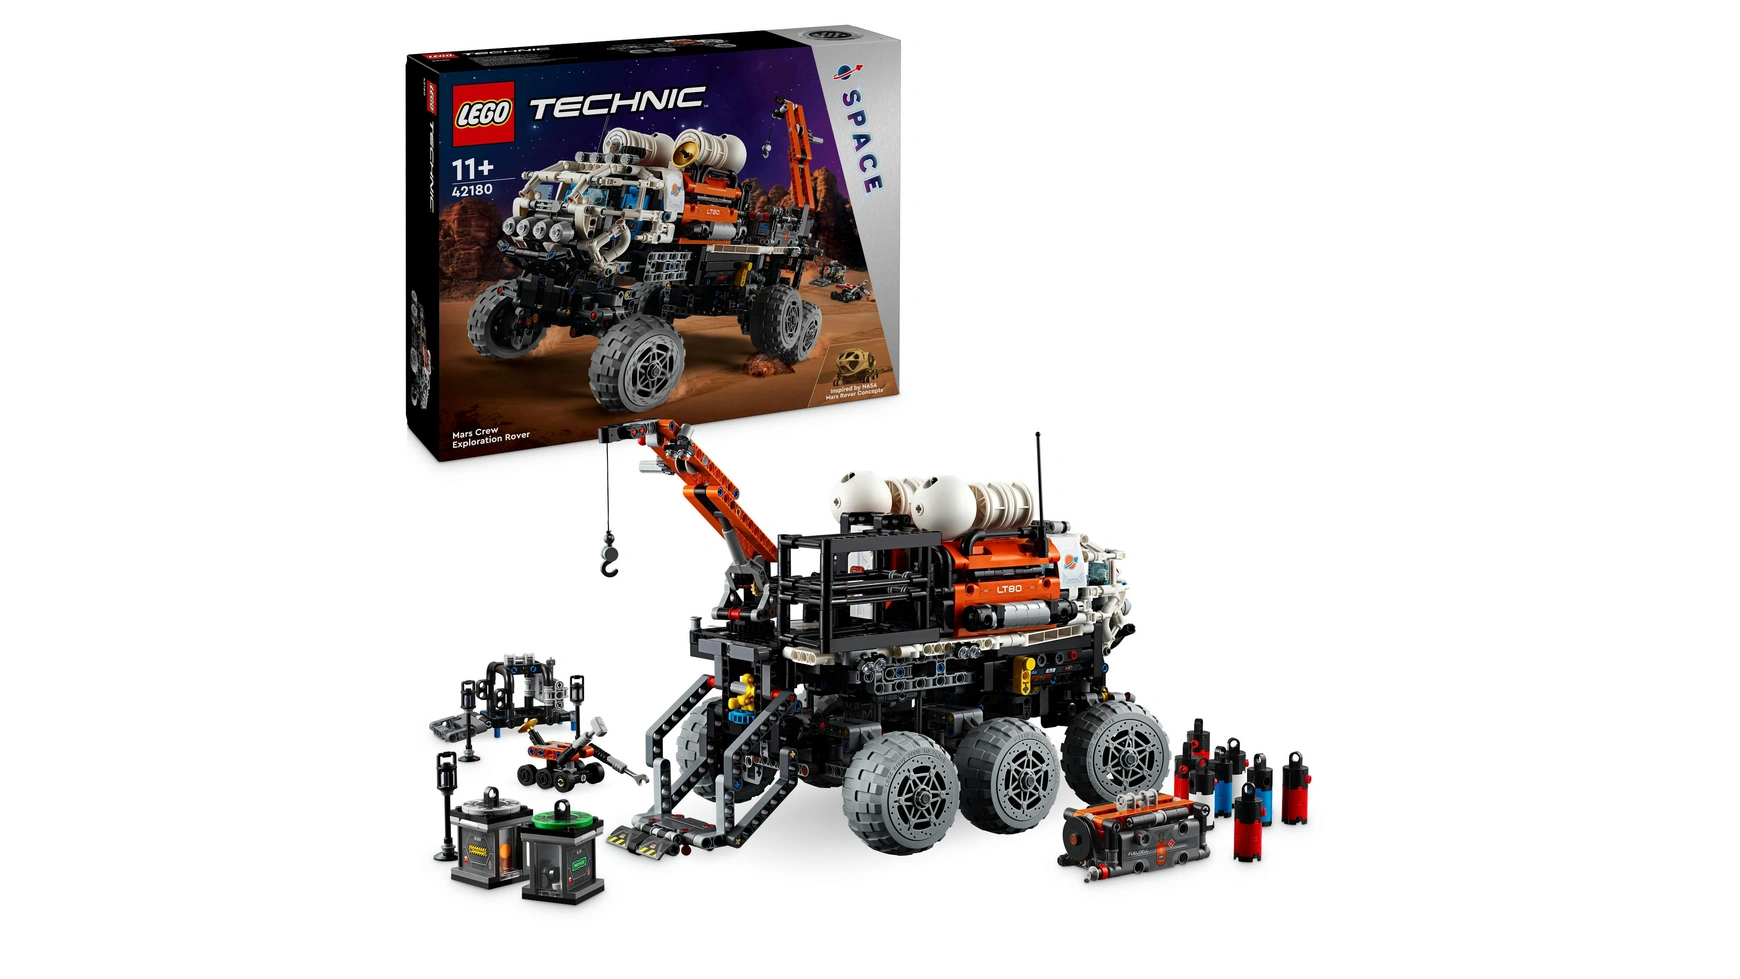 Lego Марсоход Technic Mars Exploration Rover, игровой набор набор каучуков elegoo mars с пленкой fep и крышками для anycubic photon и elegoo mars pro